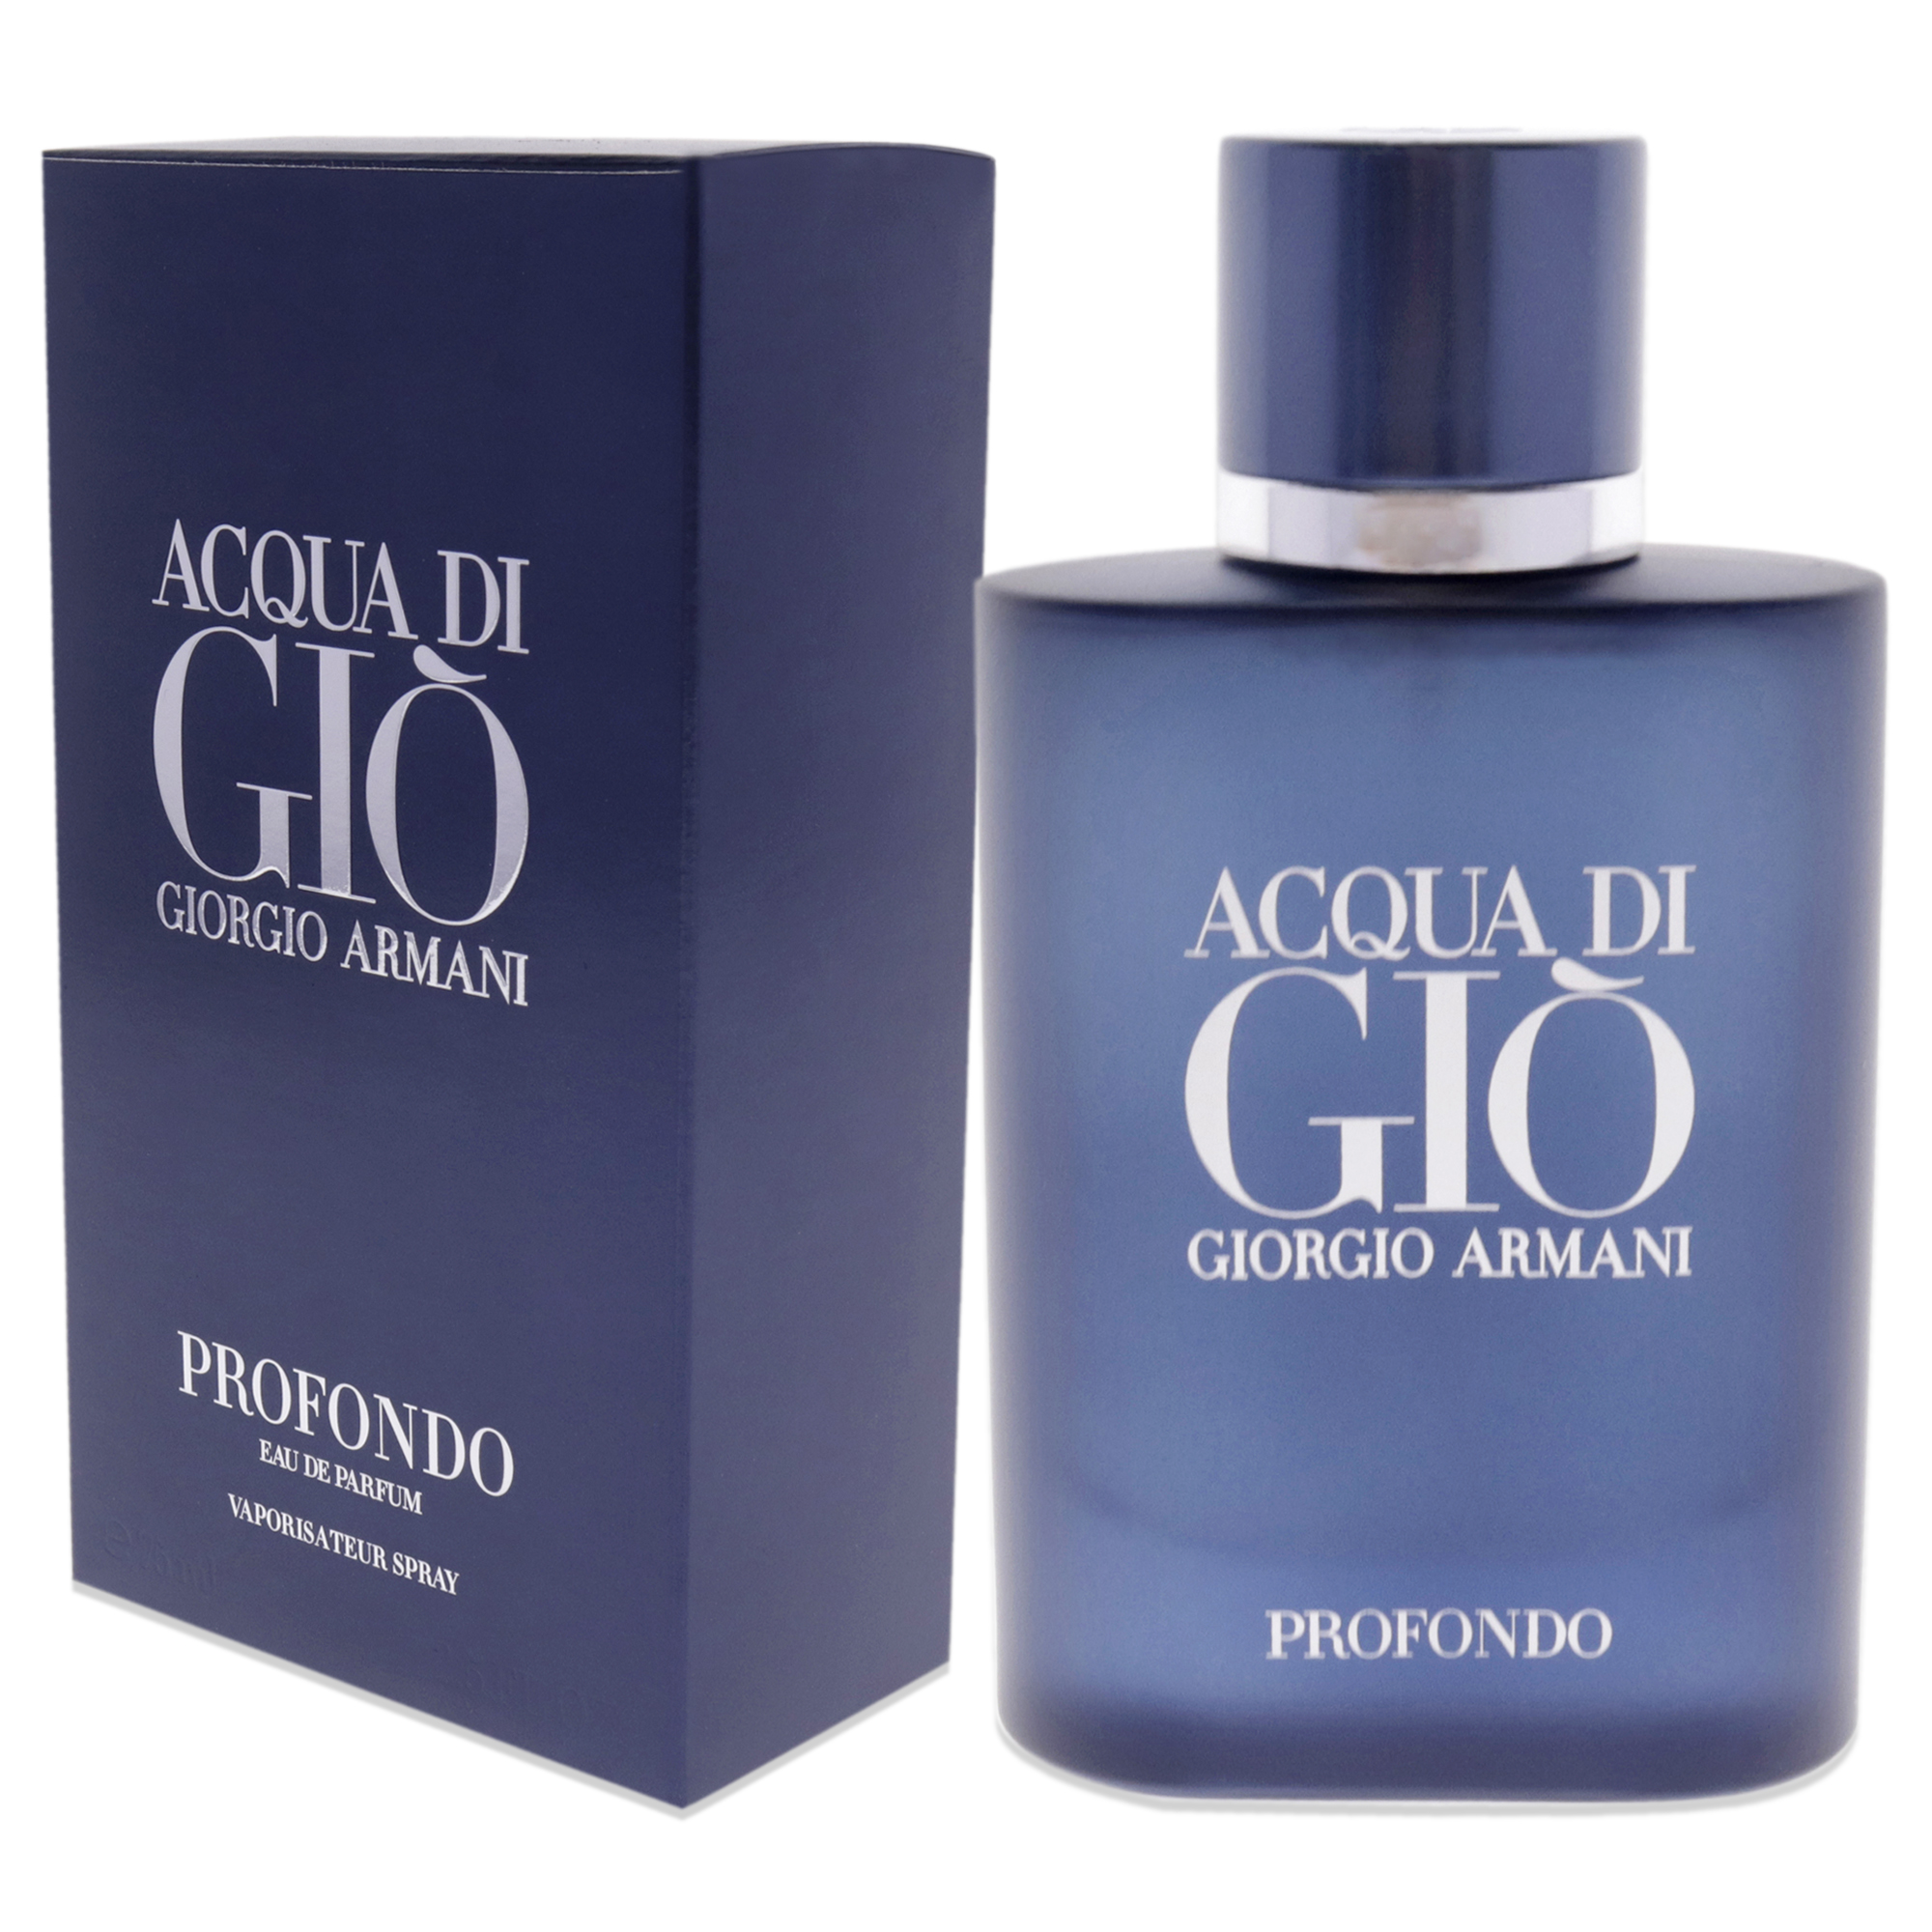 Giorgio Armani Acqua Di Gio Profondo Eau de Parfum, Cologne for Men, 2. ...